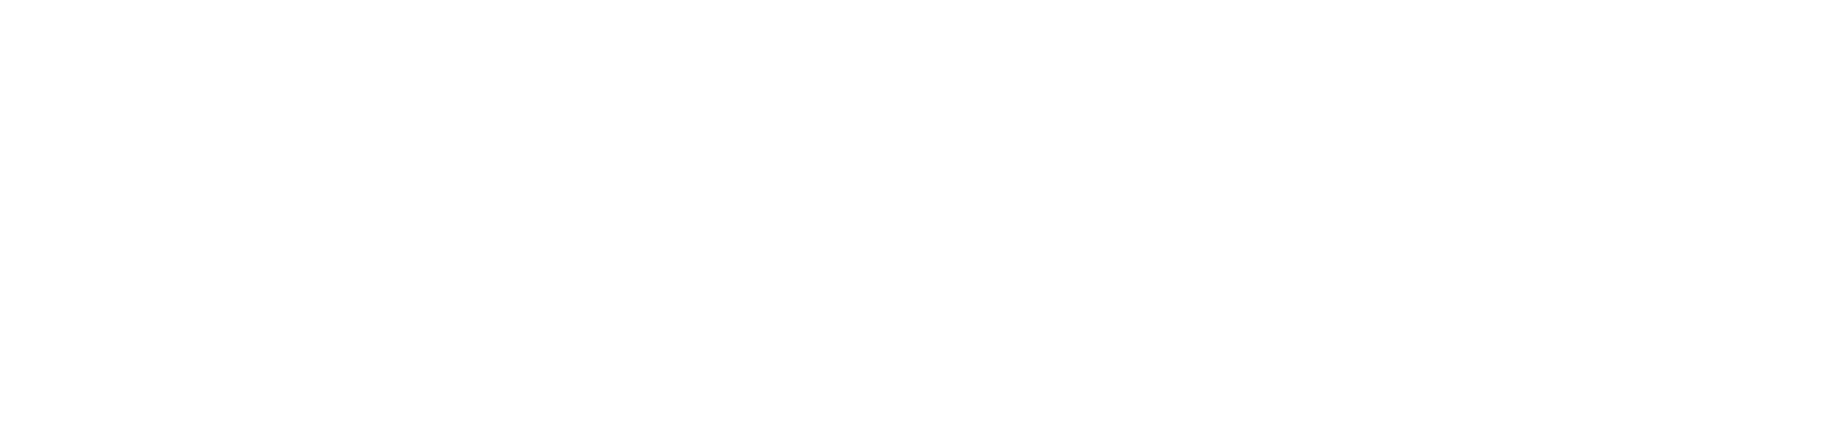 Students' Union, UCalgary